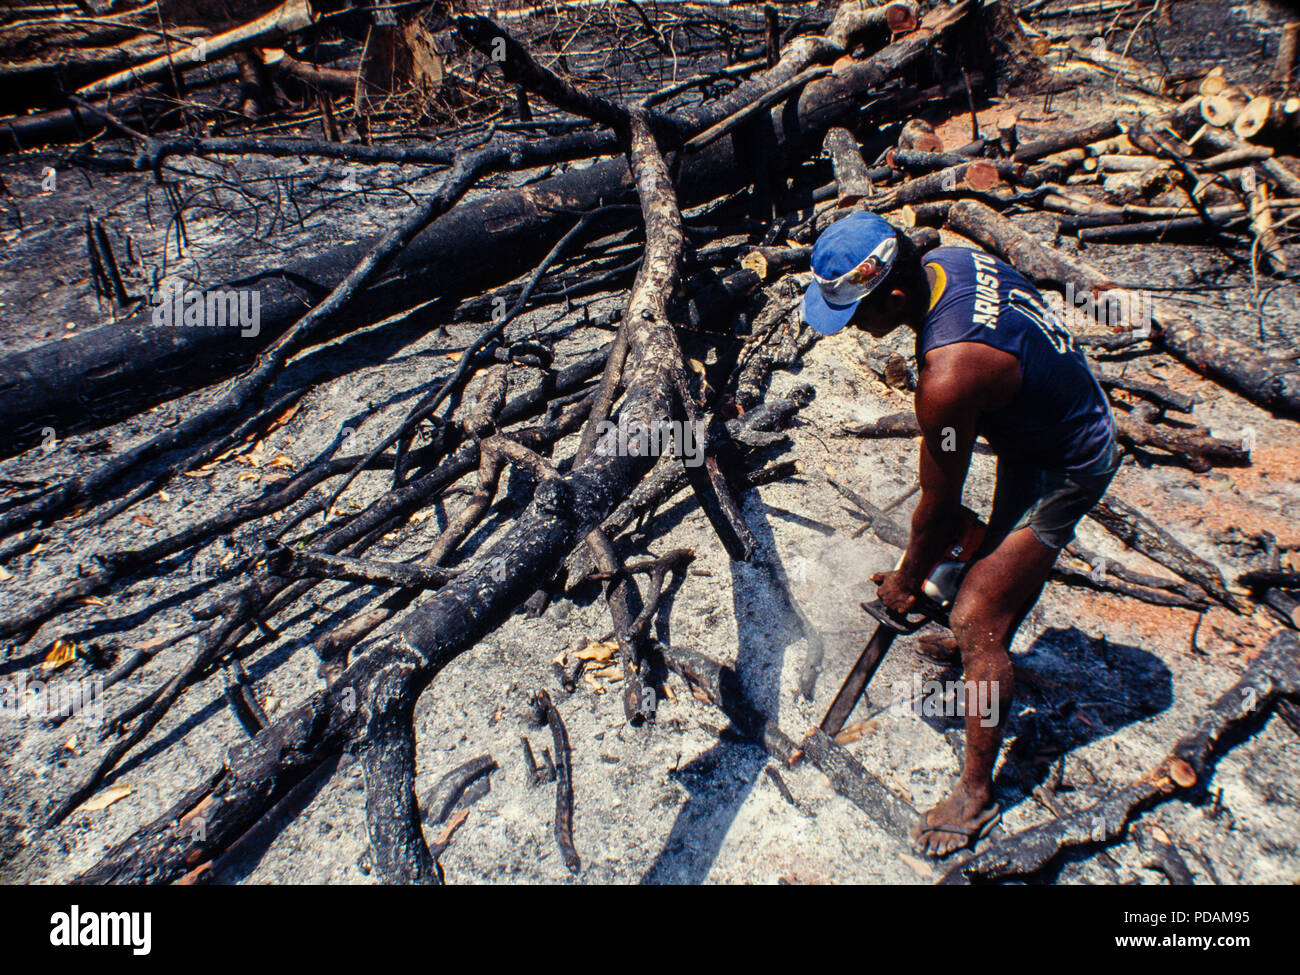 Registro, selva amazónica de minas, trabajadores cortan árboles con motosierra en un cortados y quemados, parche de bosque. El estado de Acre, Brasil. Foto de stock